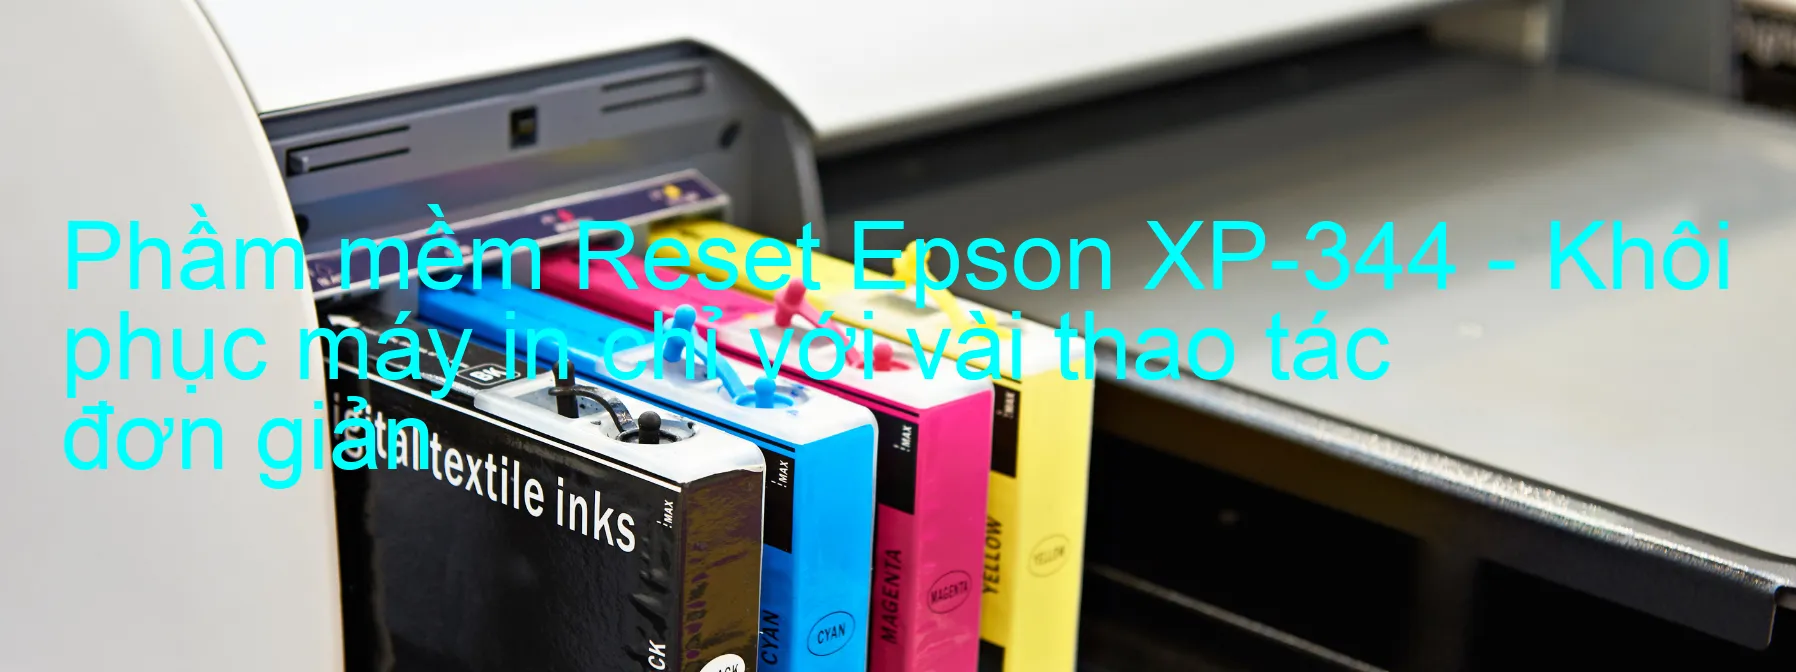 Phầm mềm Reset Epson XP-344 - Khôi phục máy in chỉ với vài thao tác đơn giản